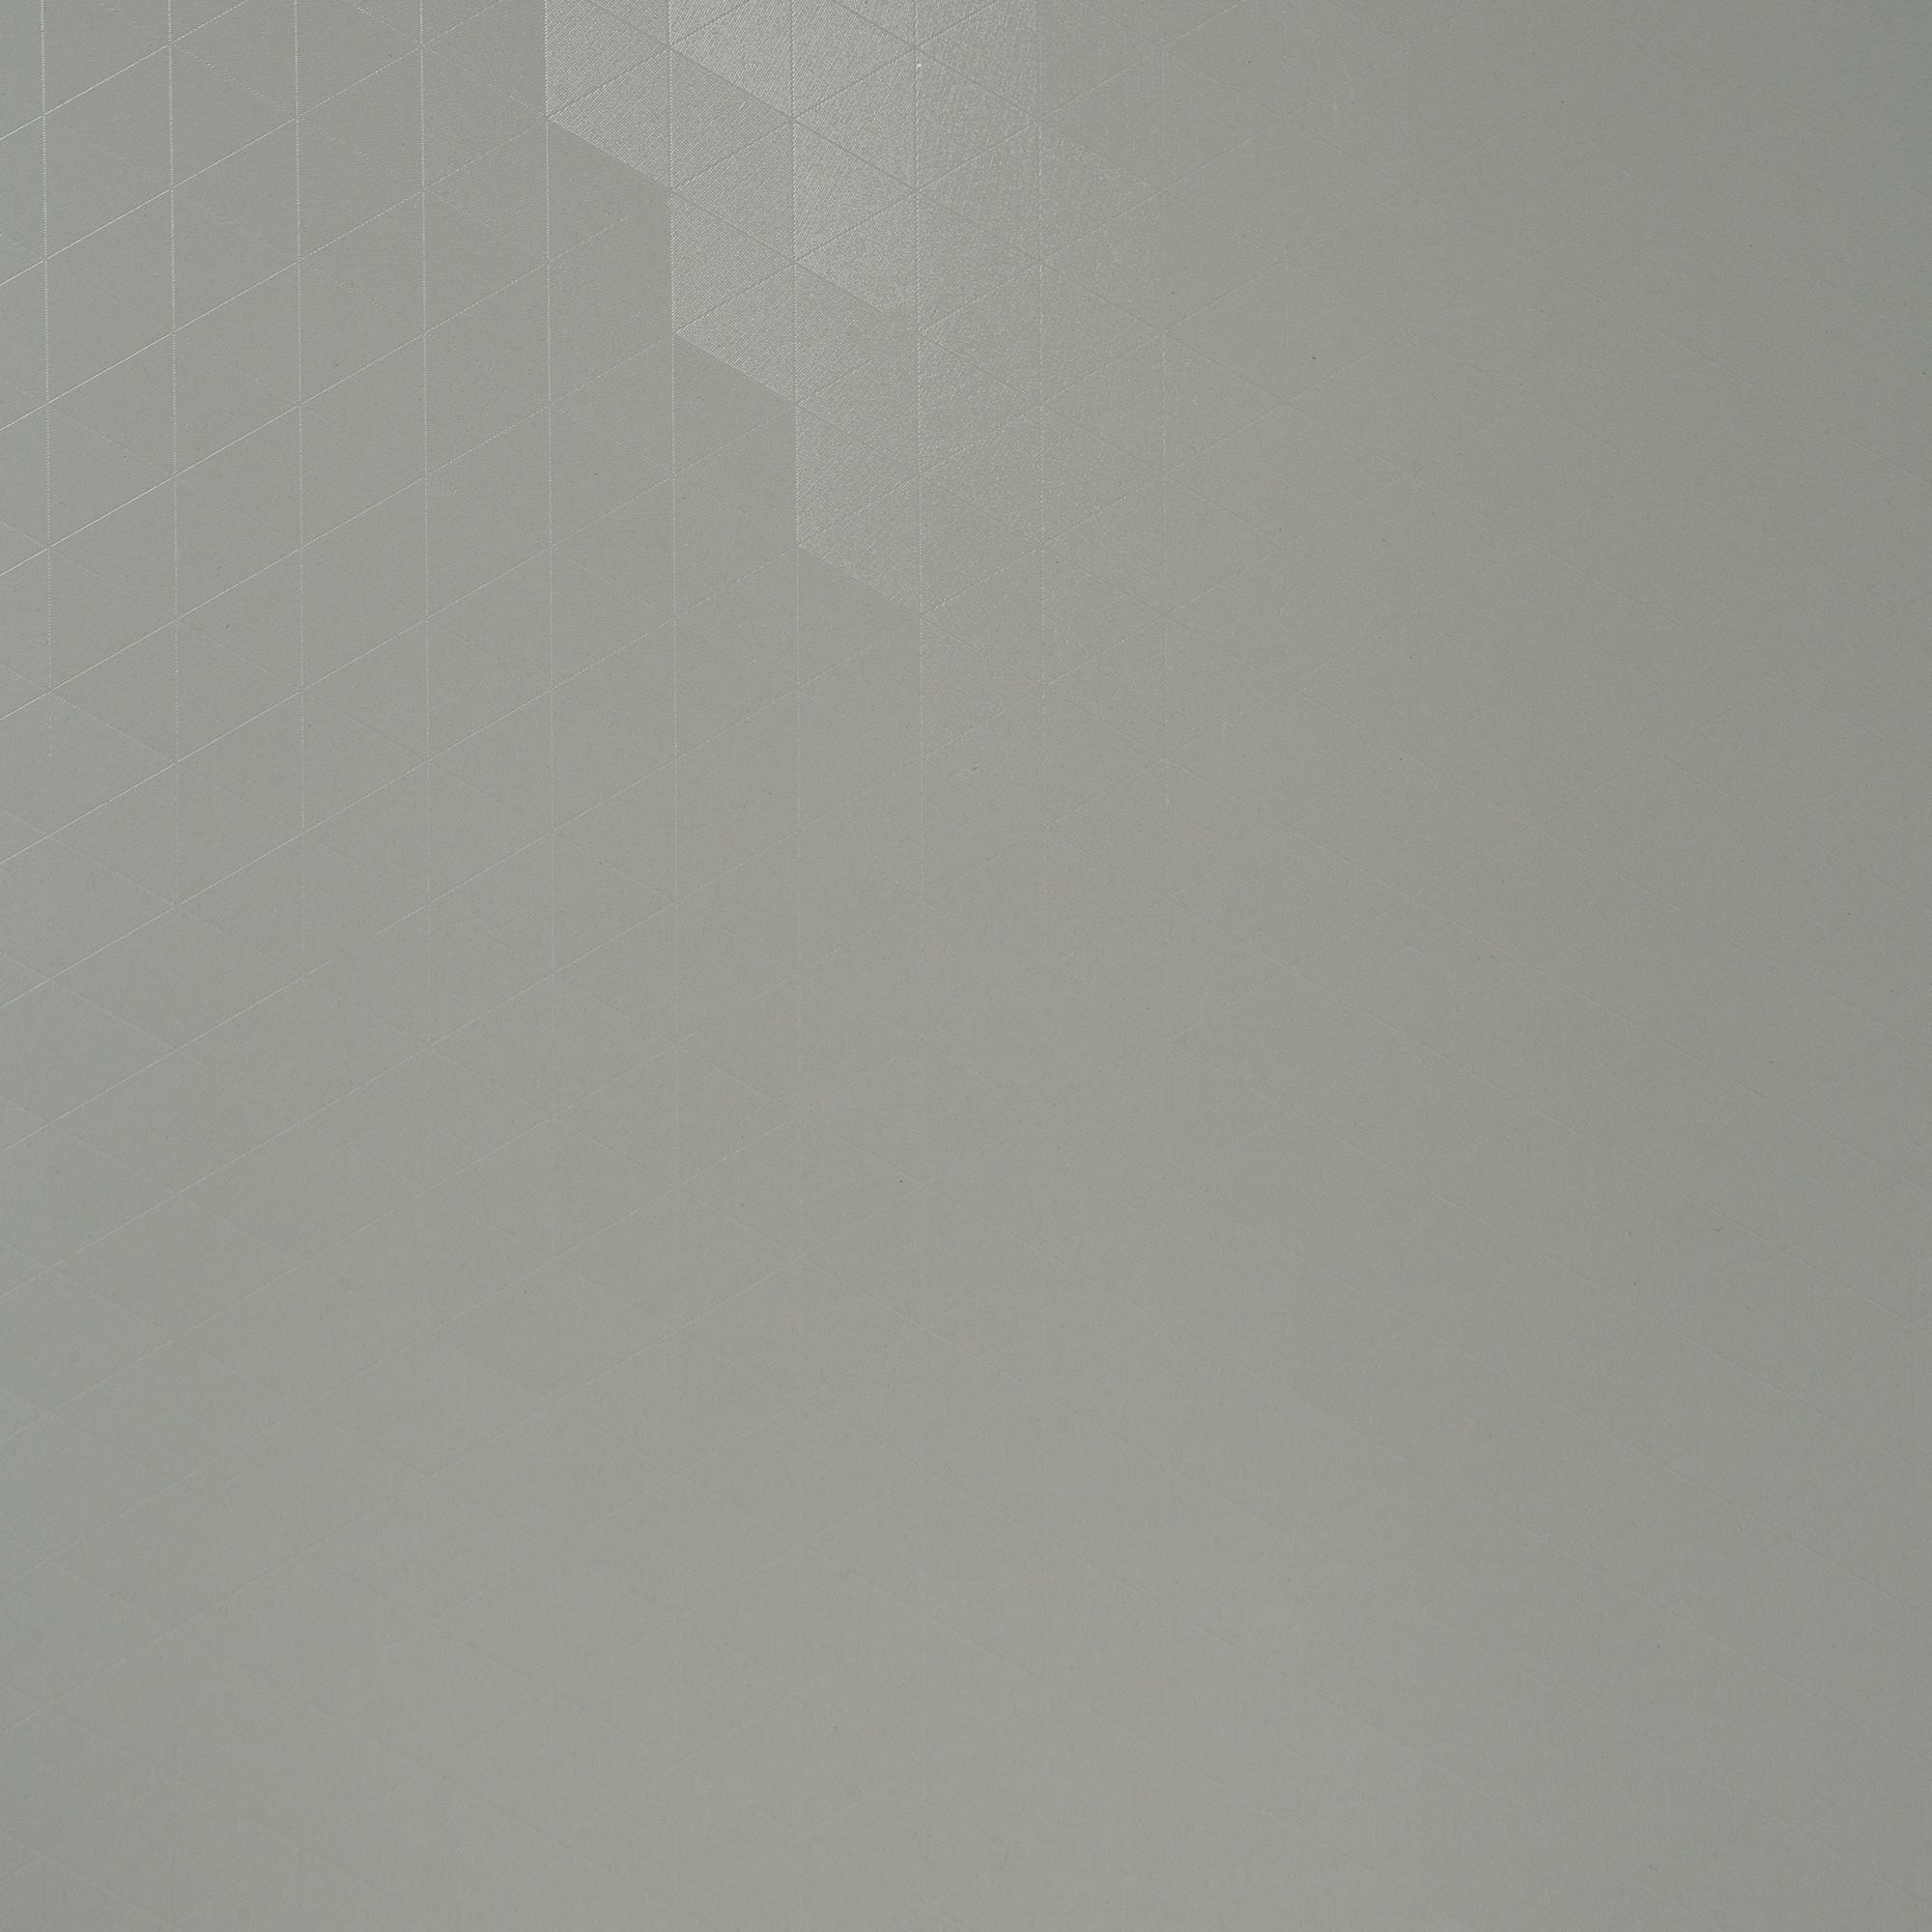 Панель мдф стеновая камень белый 1220х2440х6мм